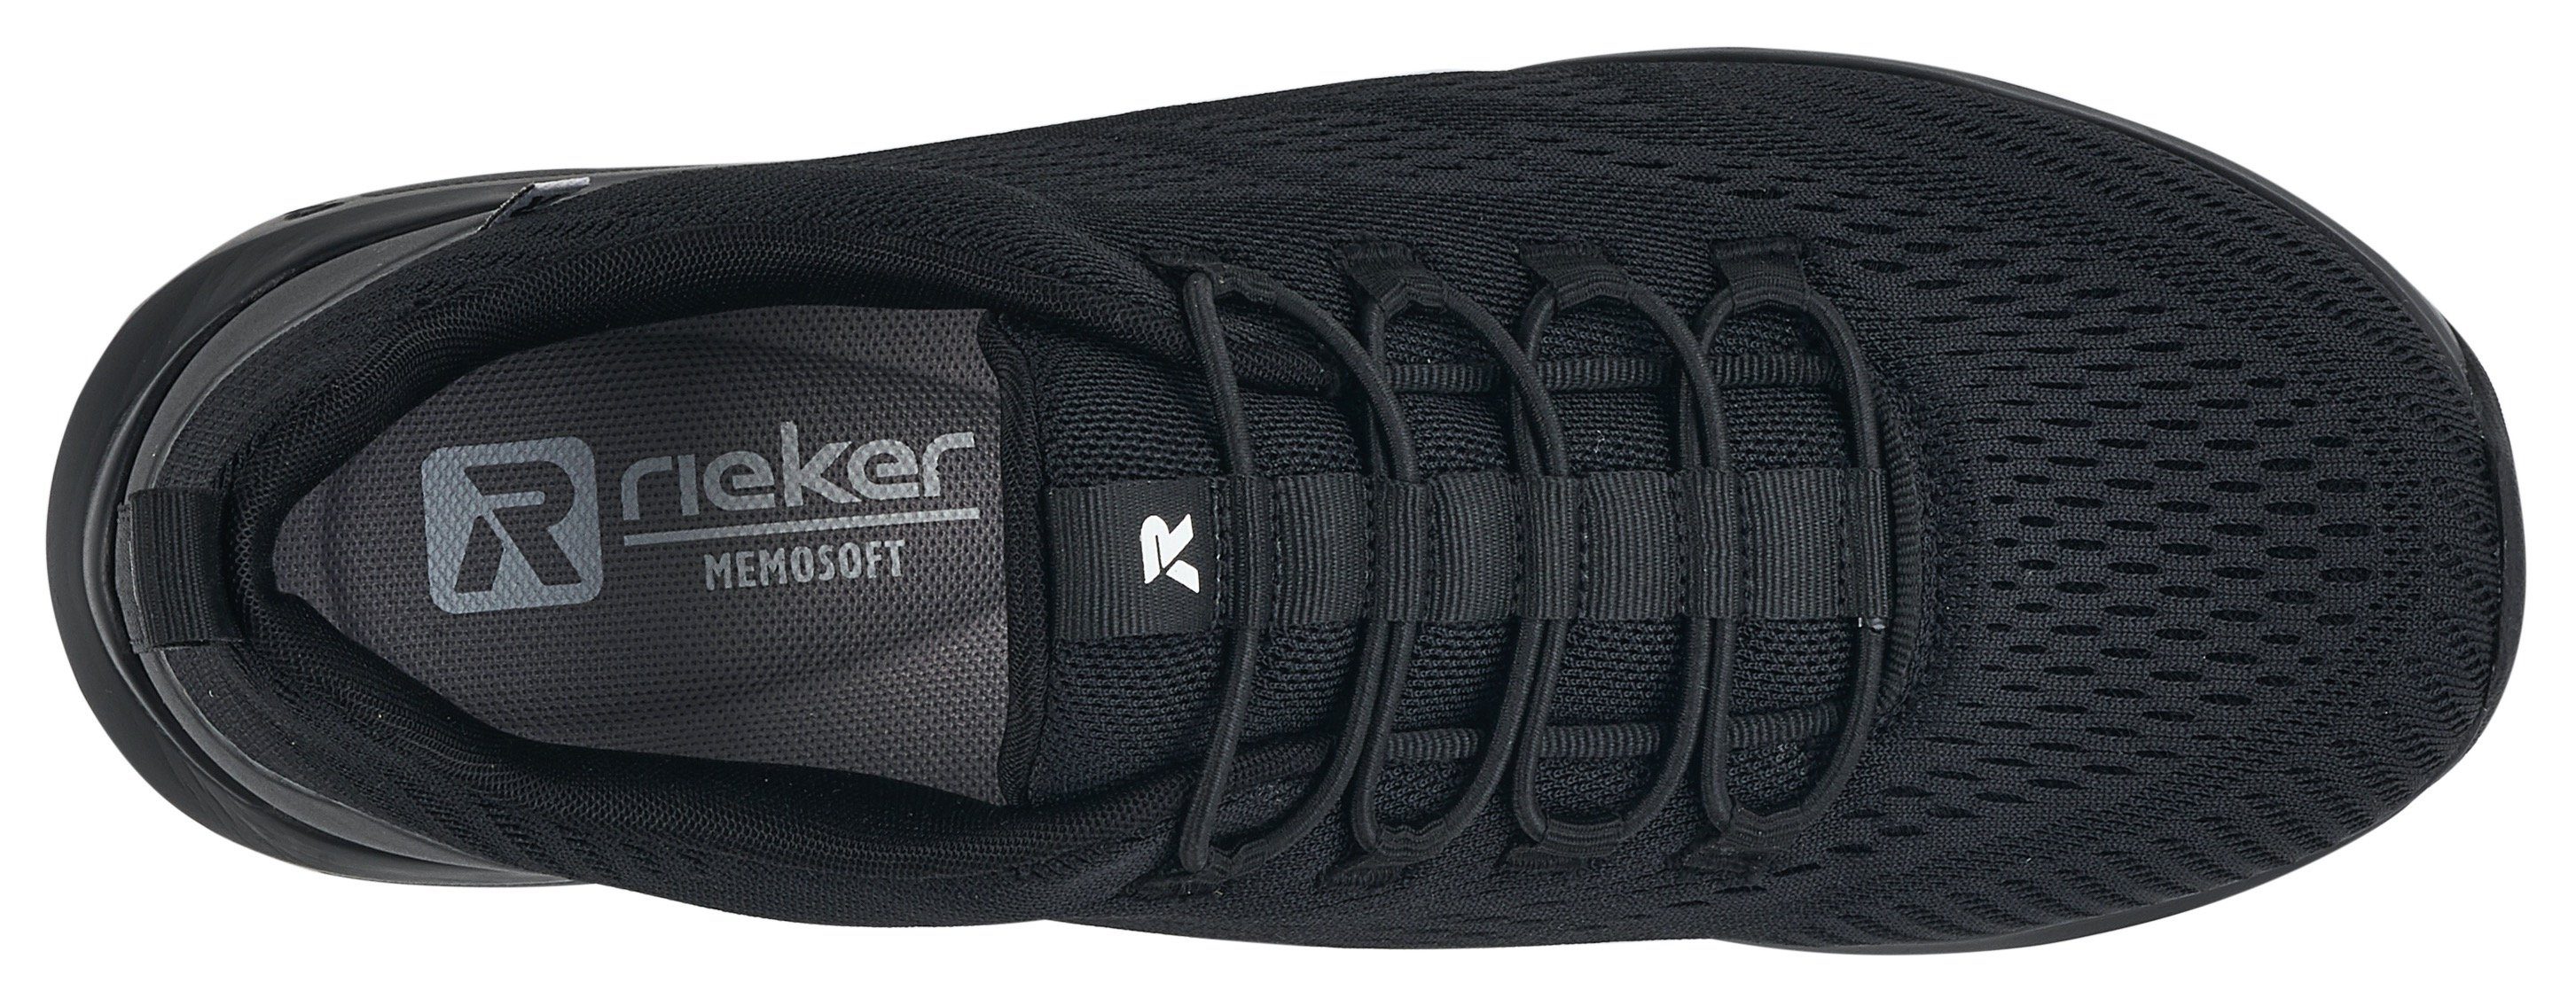 Rieker EVOLUTION Slip-On schwarz dunkel mit Gummizug Sneaker